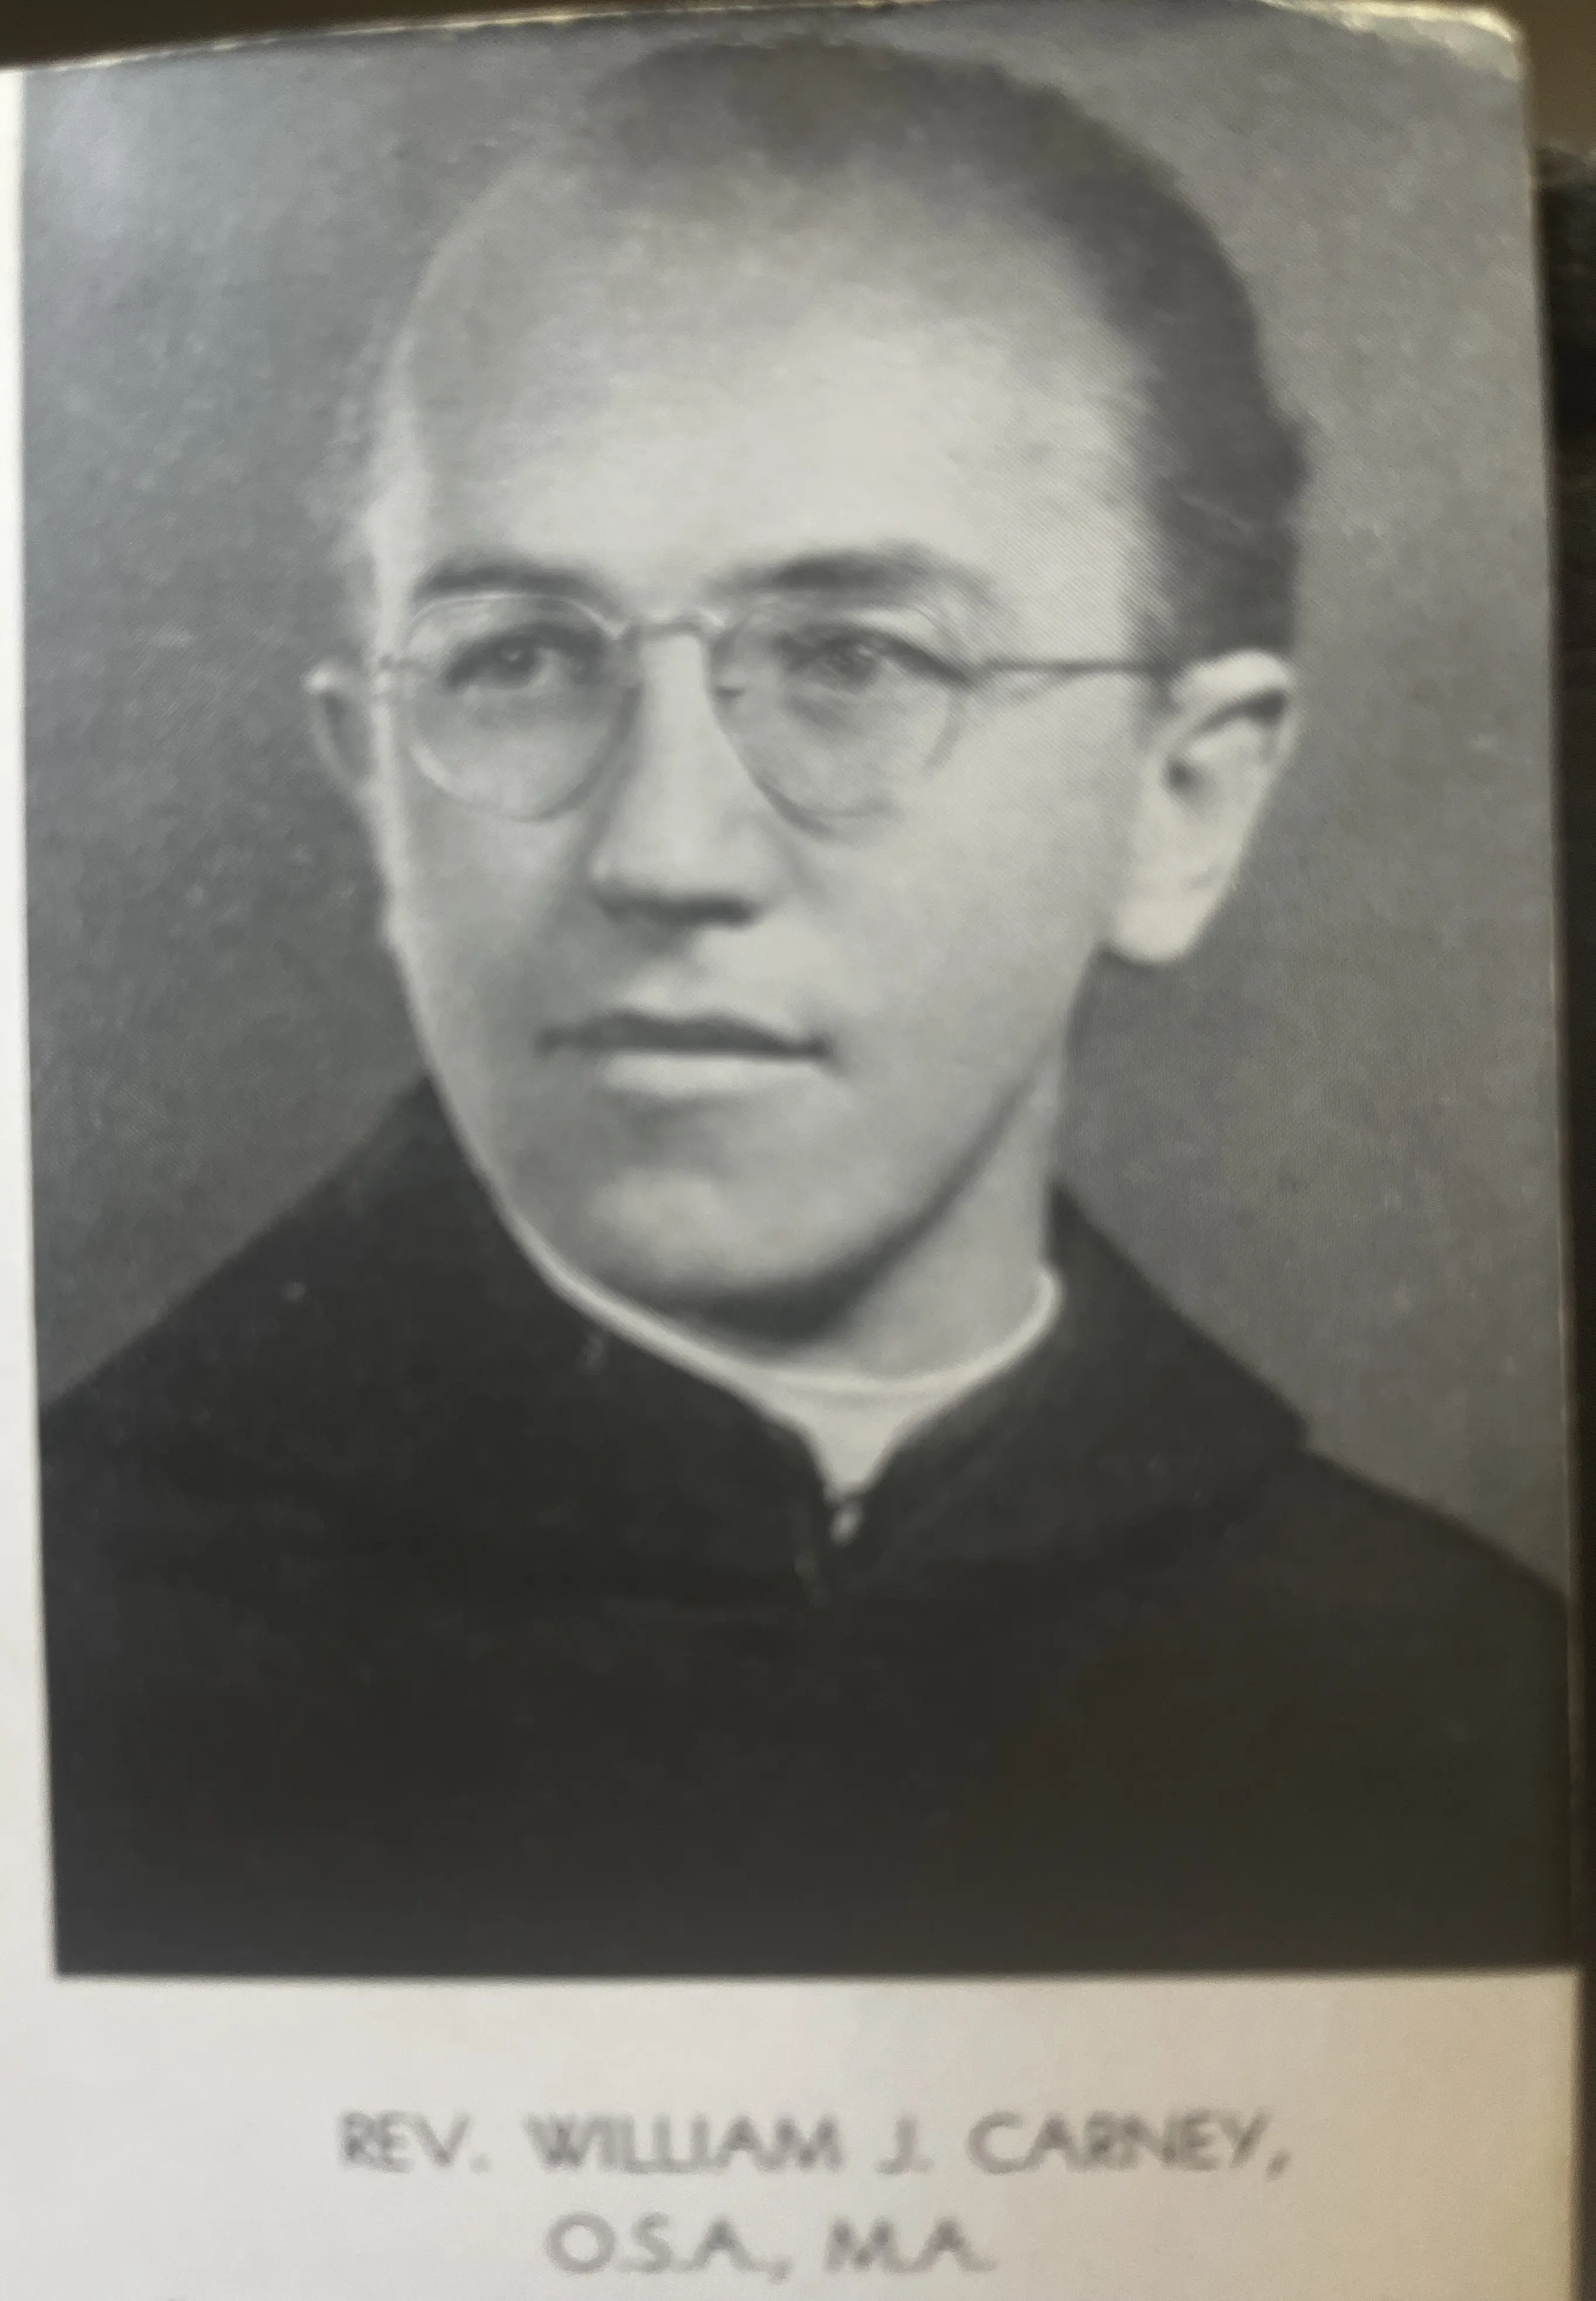 Rev. William J. Carney O.S.A., M.A.